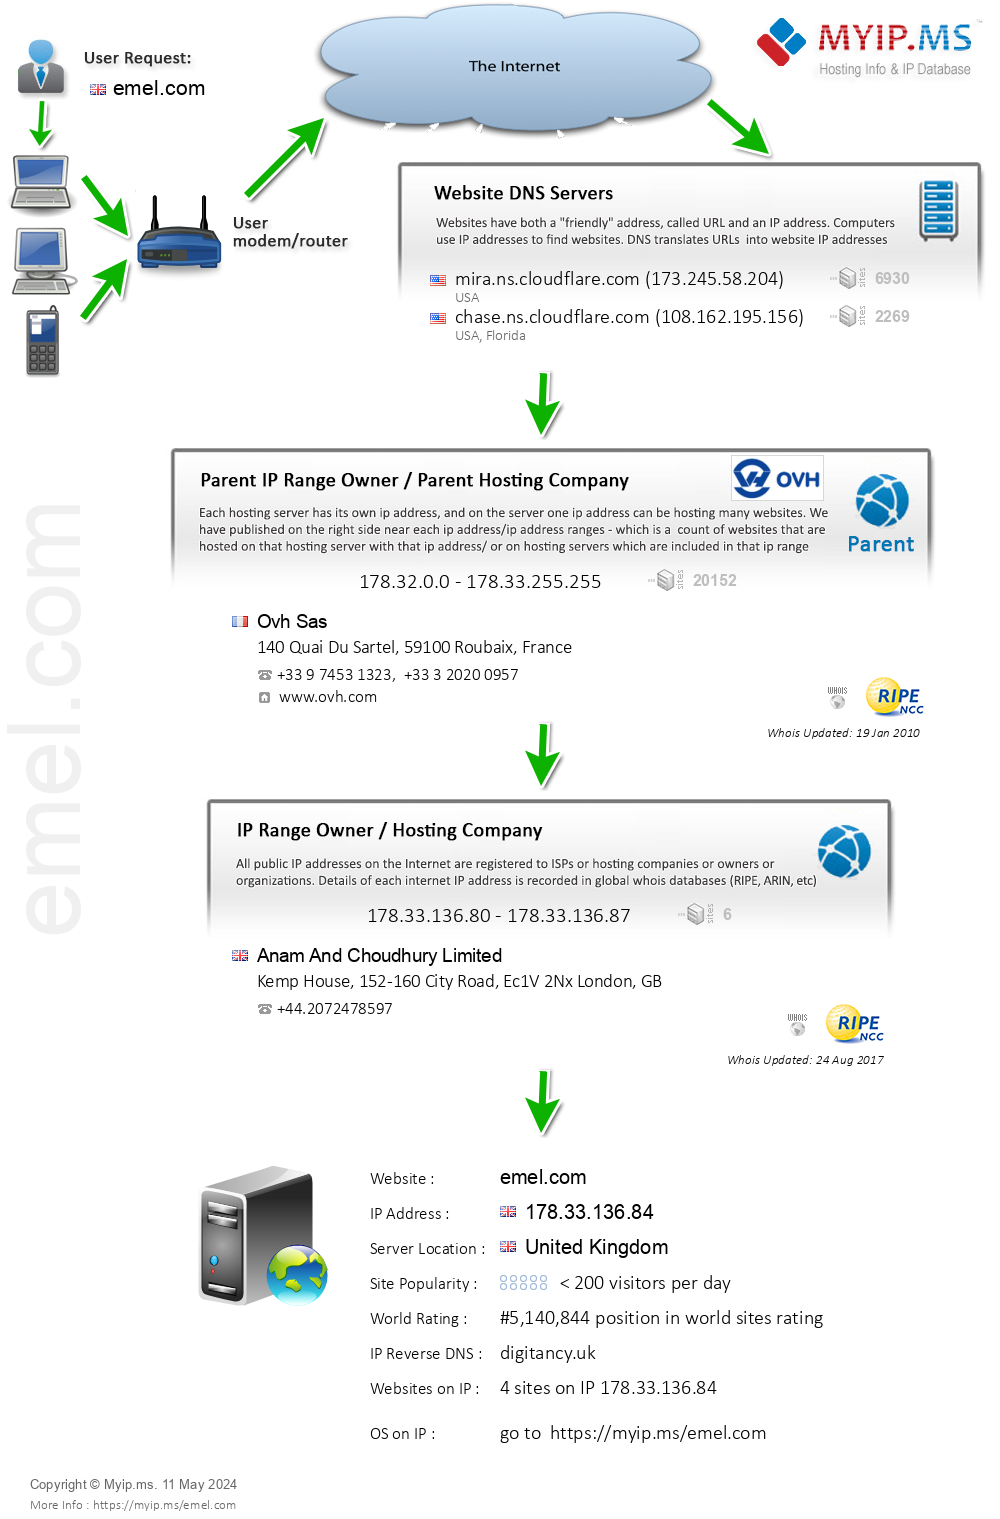 Emel.com - Website Hosting Visual IP Diagram